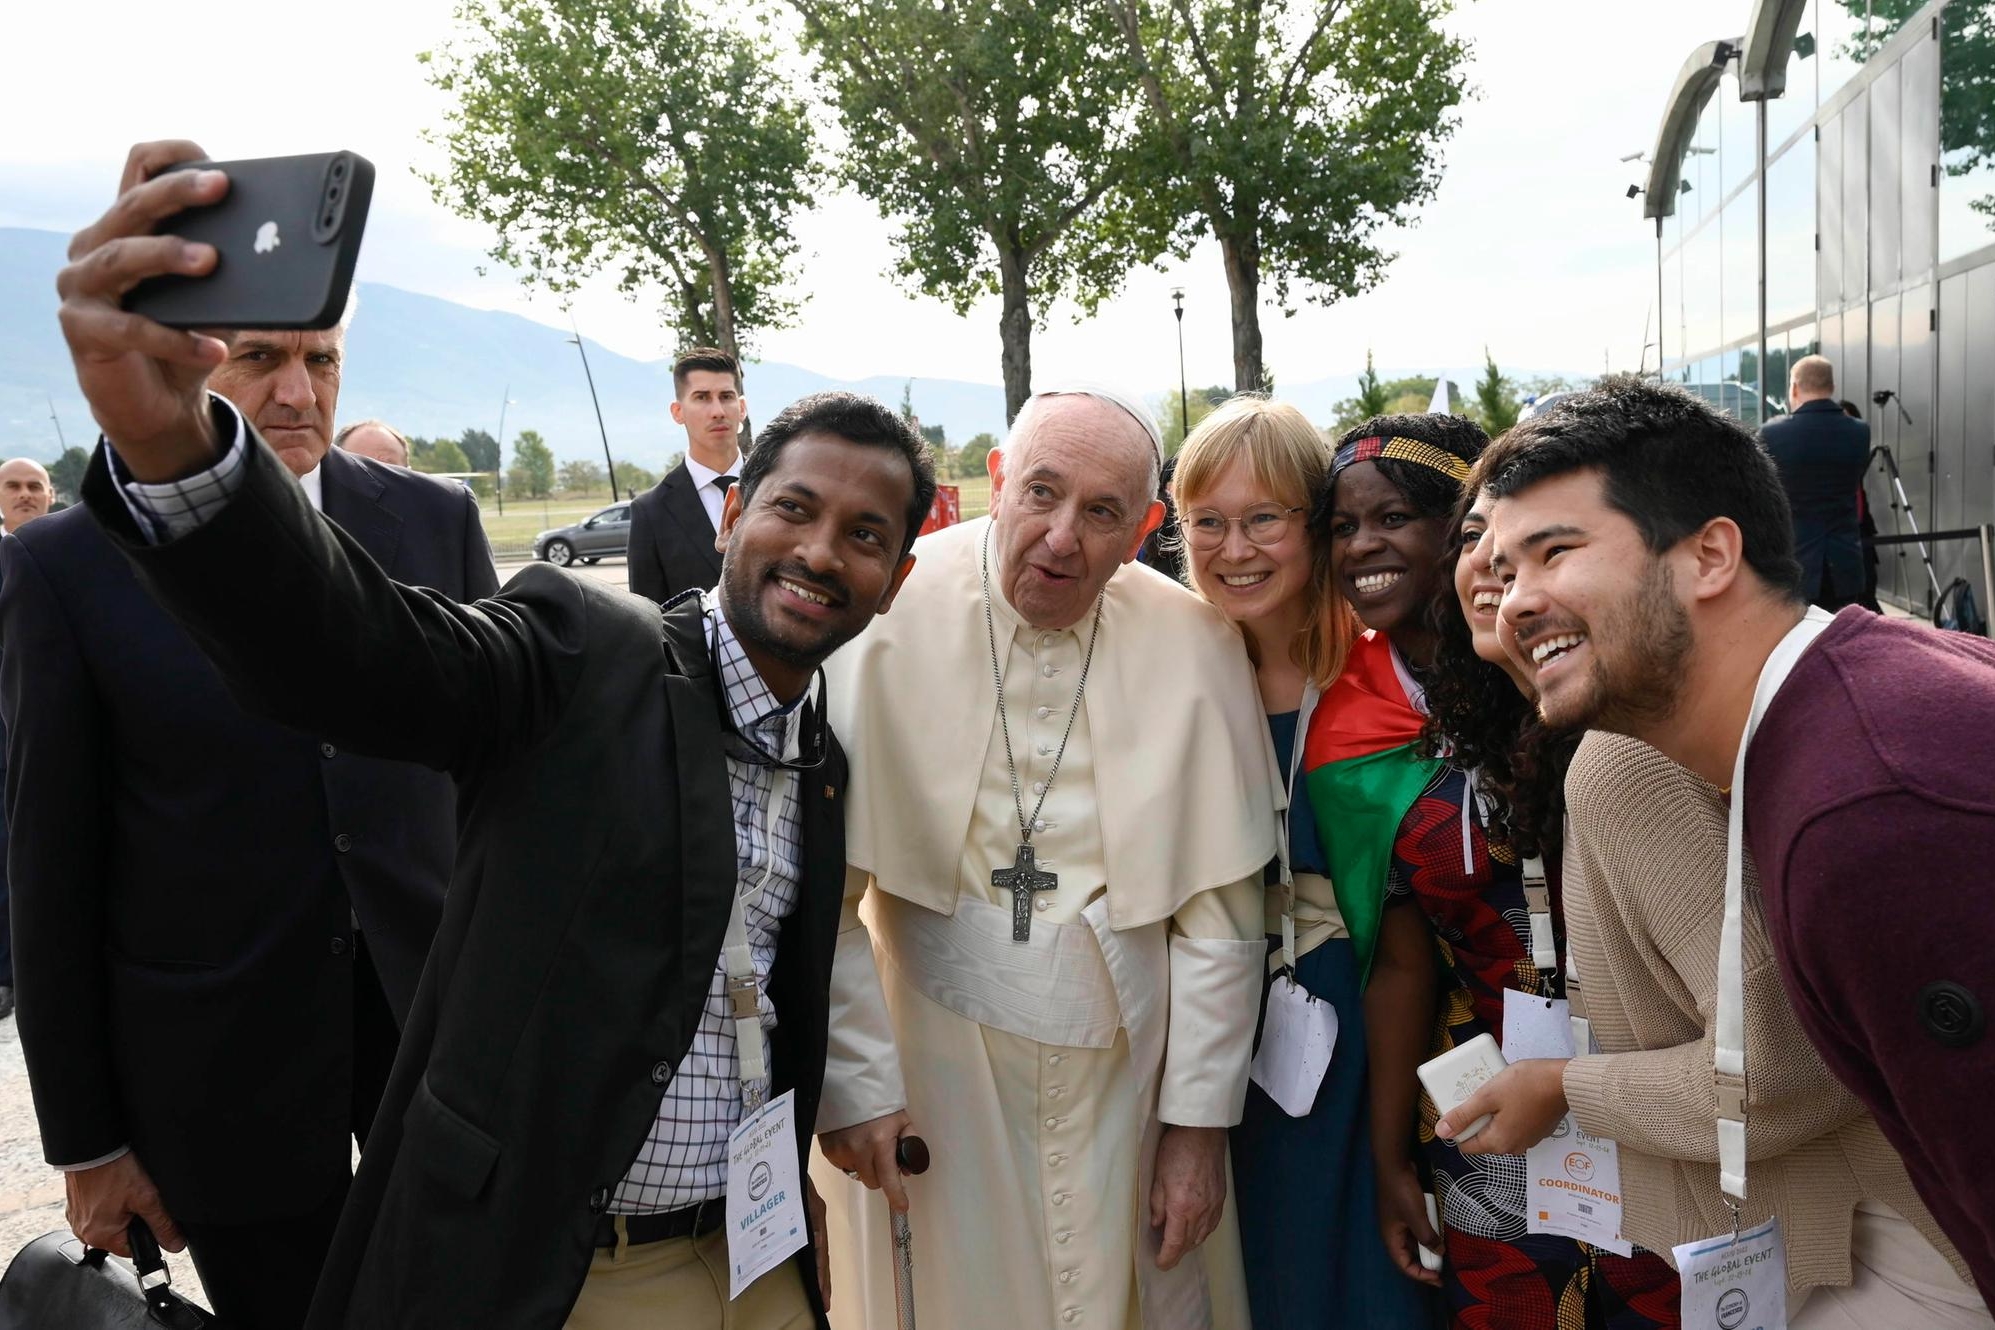 La nuova economia secondo il Papa: “Lavoro per tutti, diritti per le donne, rispetto per l’ambiente”